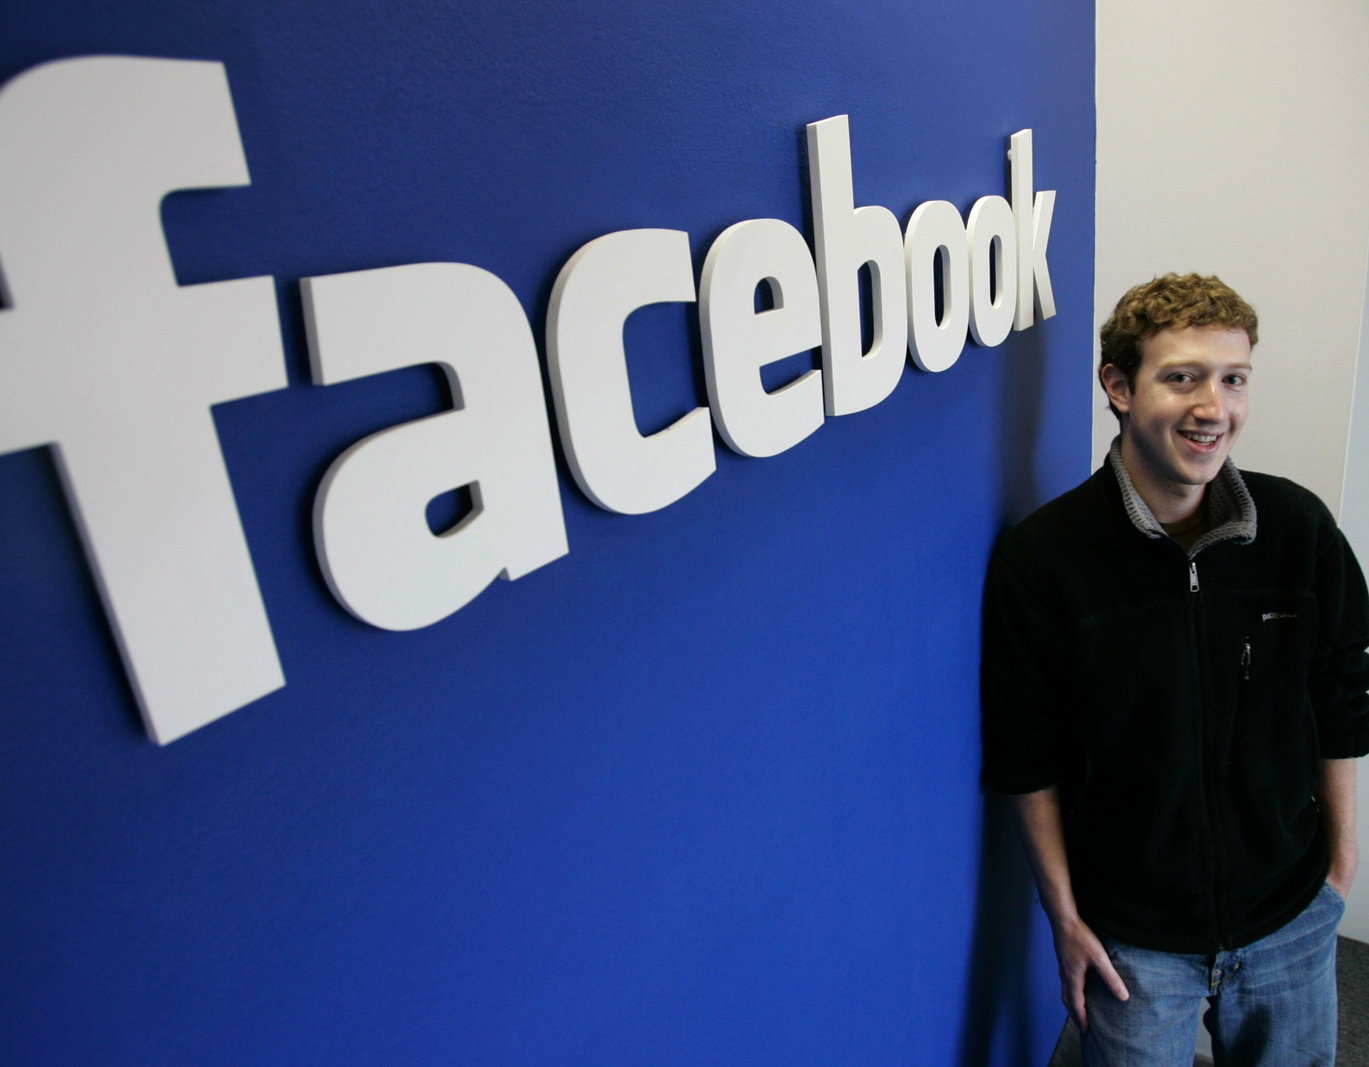 Gần 50% người dùng đánh giá Facebook Home “cùi bắp”